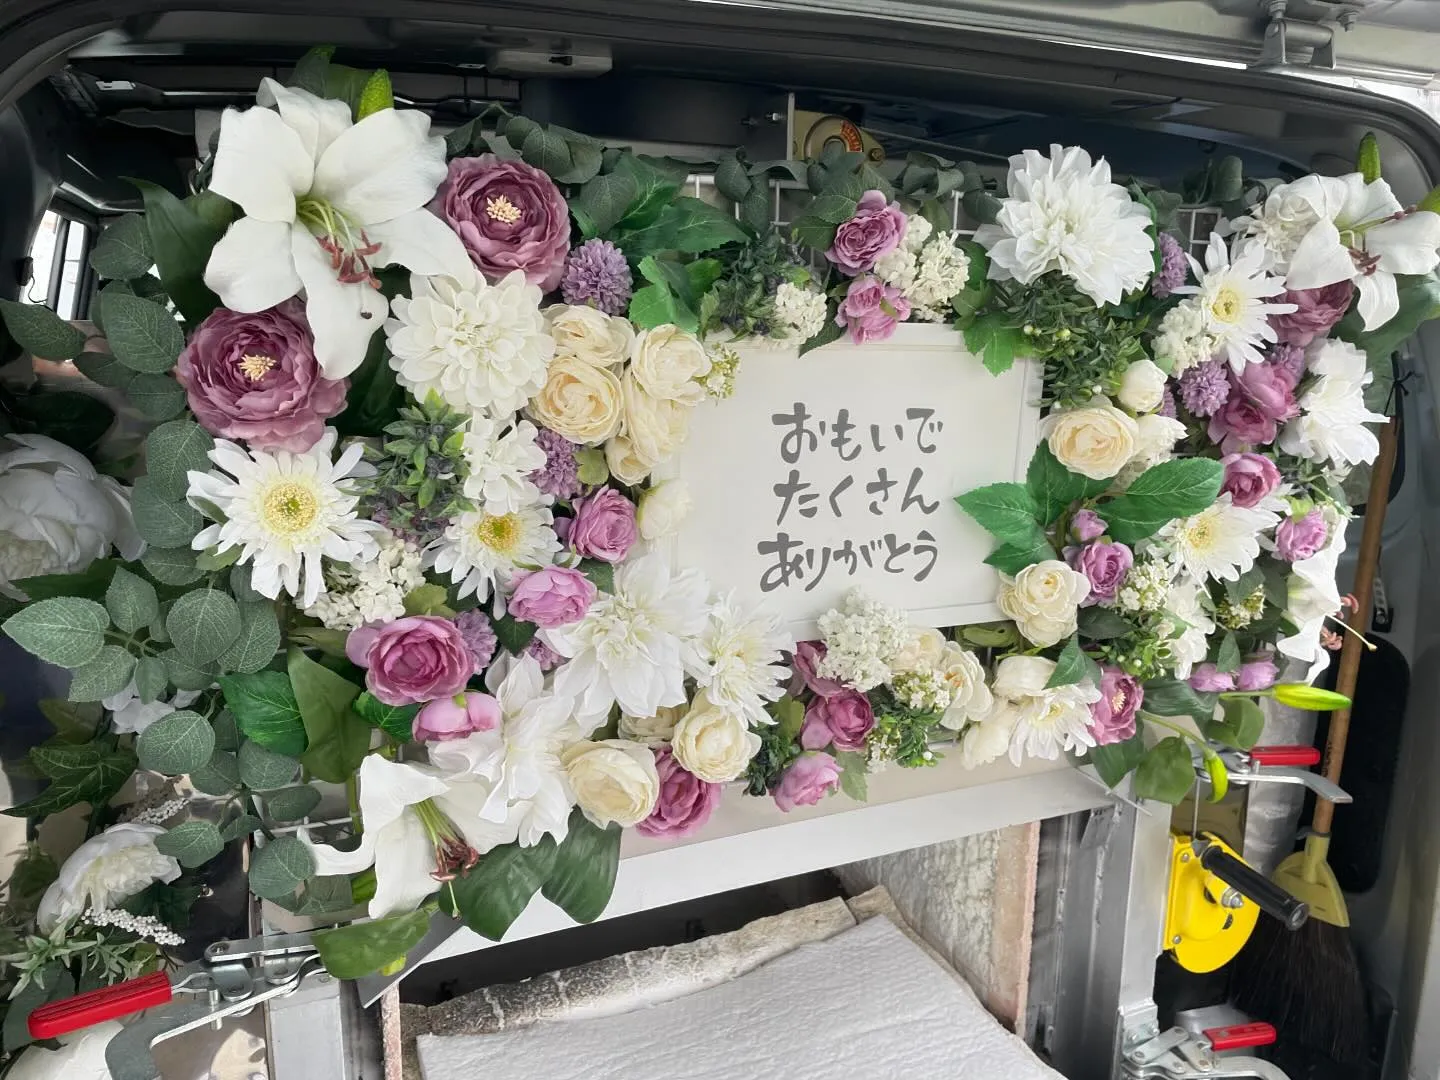 東京都調布市にてトイプードルちゃんのご火葬に伺いました。